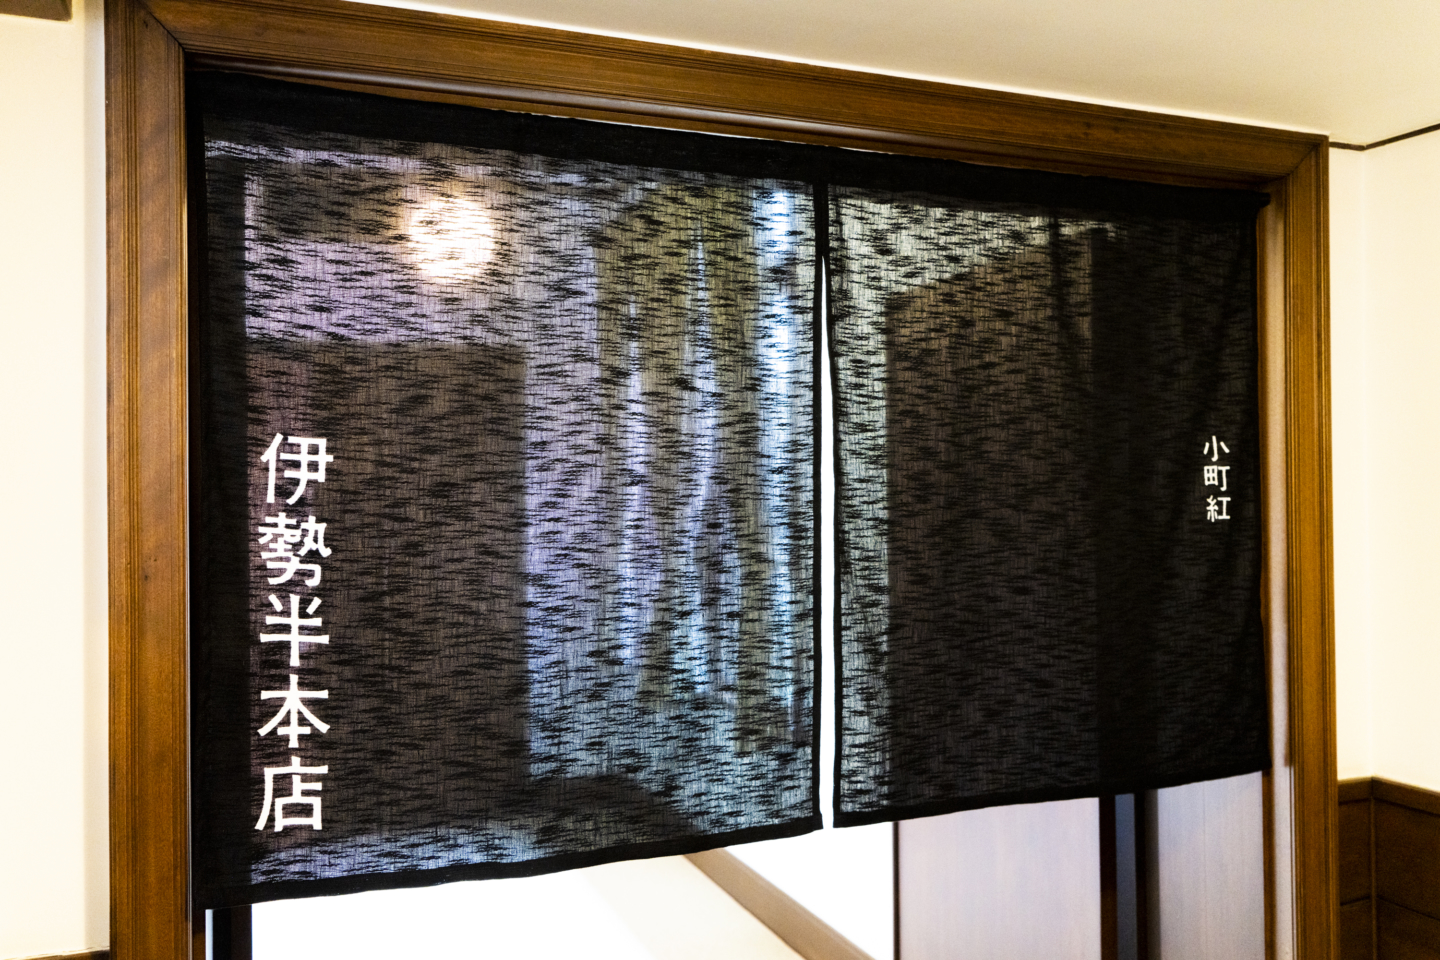 Sur les rideaux « Noren » mis à l’entrée des magasins, se trouve un message essentiel pour ces temps modernes. Quel sera le nouveau défi imposé à Nakamura comme messager?